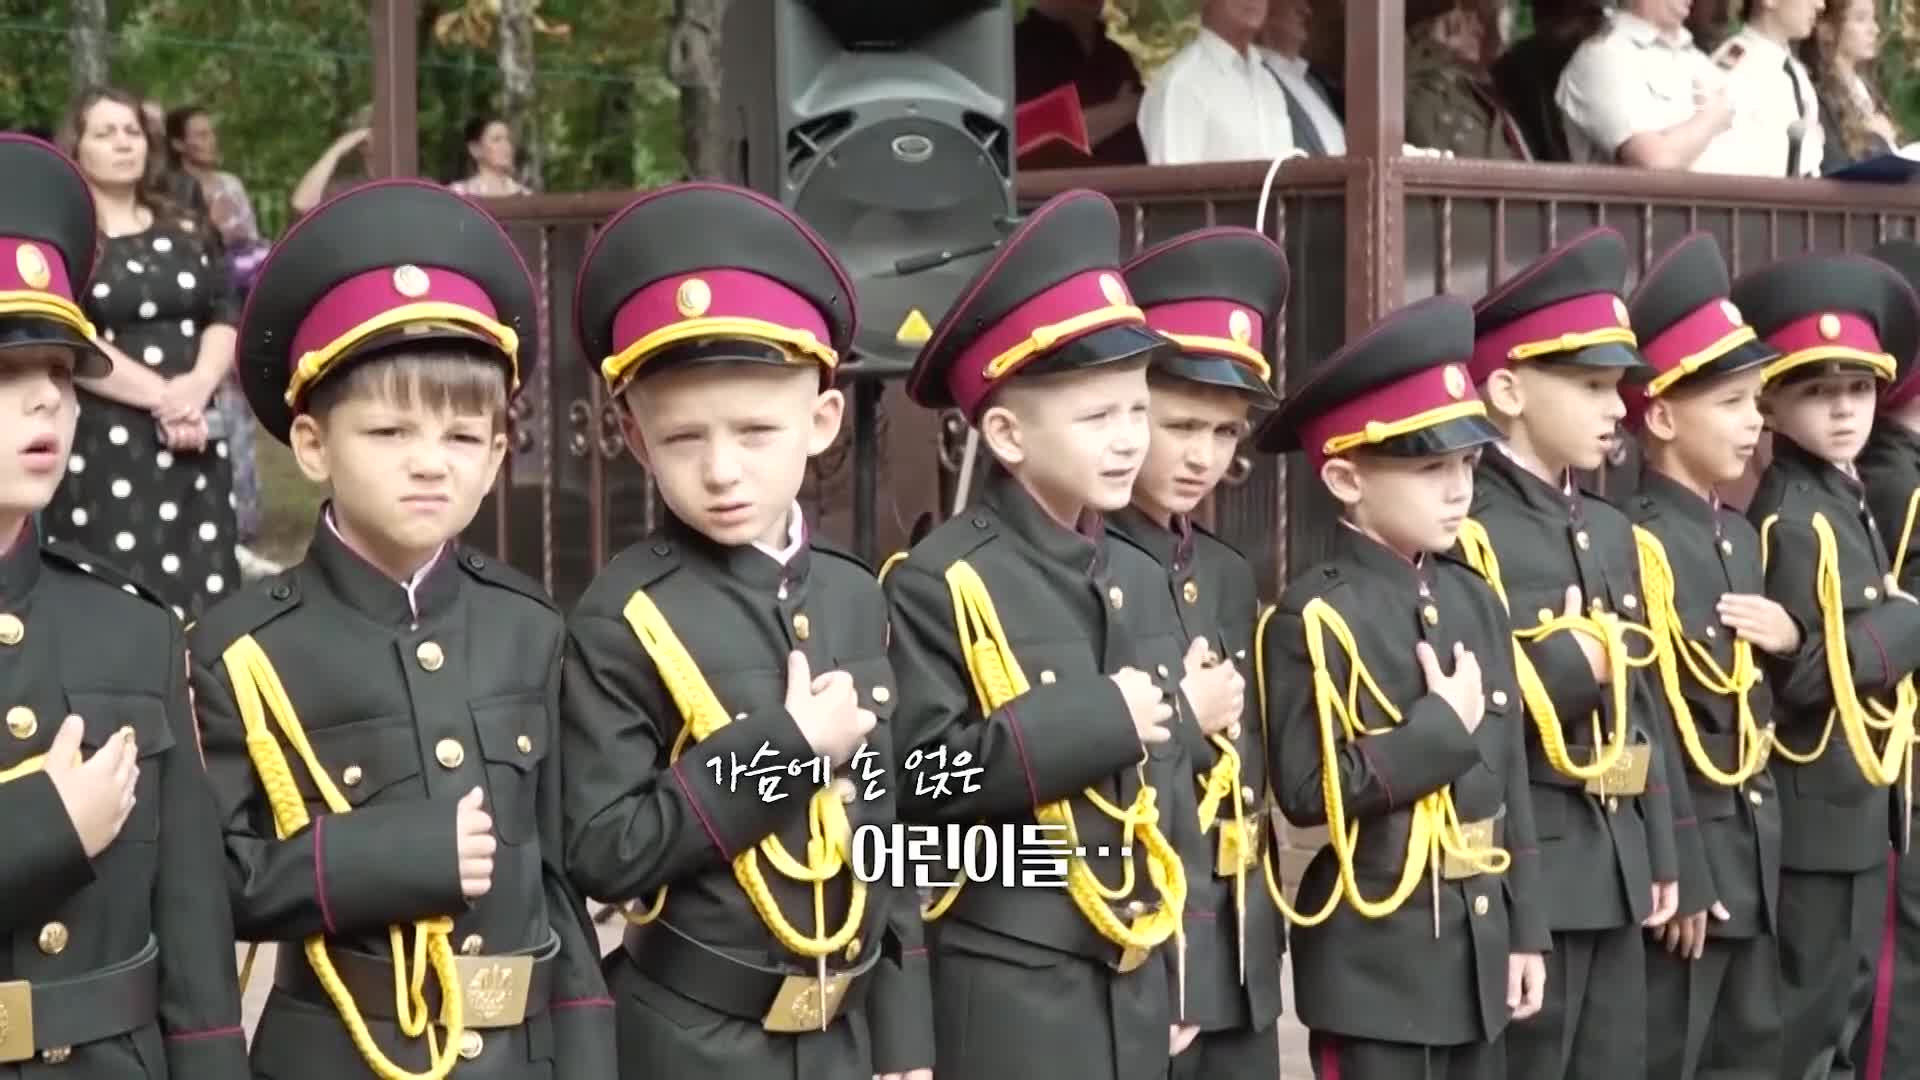 [오늘의 영상] 7살 꼬마 생도들의 의젓한 개학식